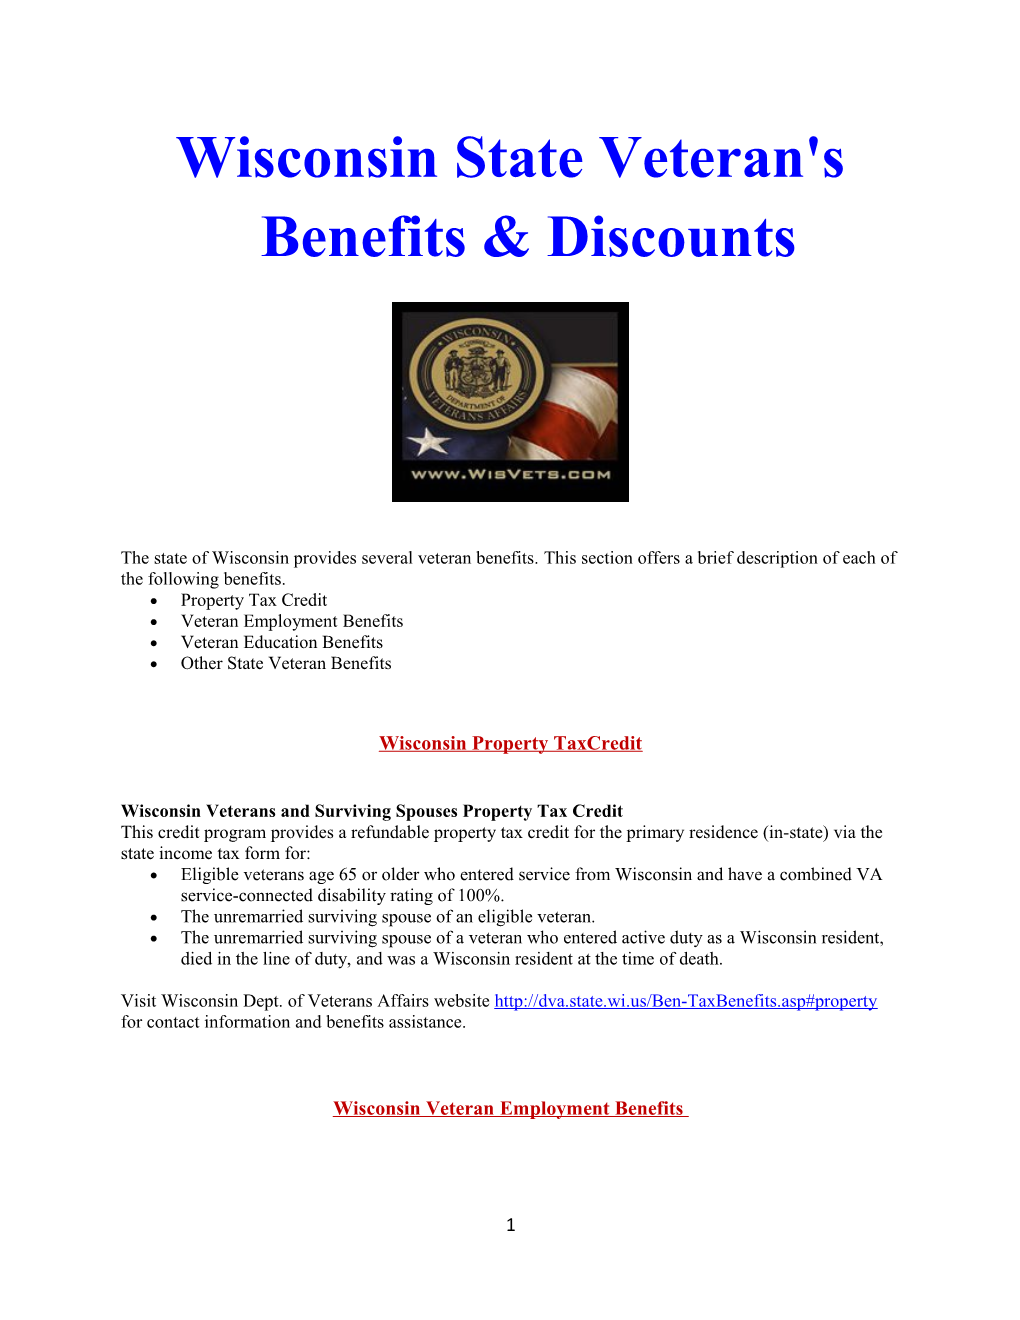 Wisconsin State Veteran's Benefits & Discounts